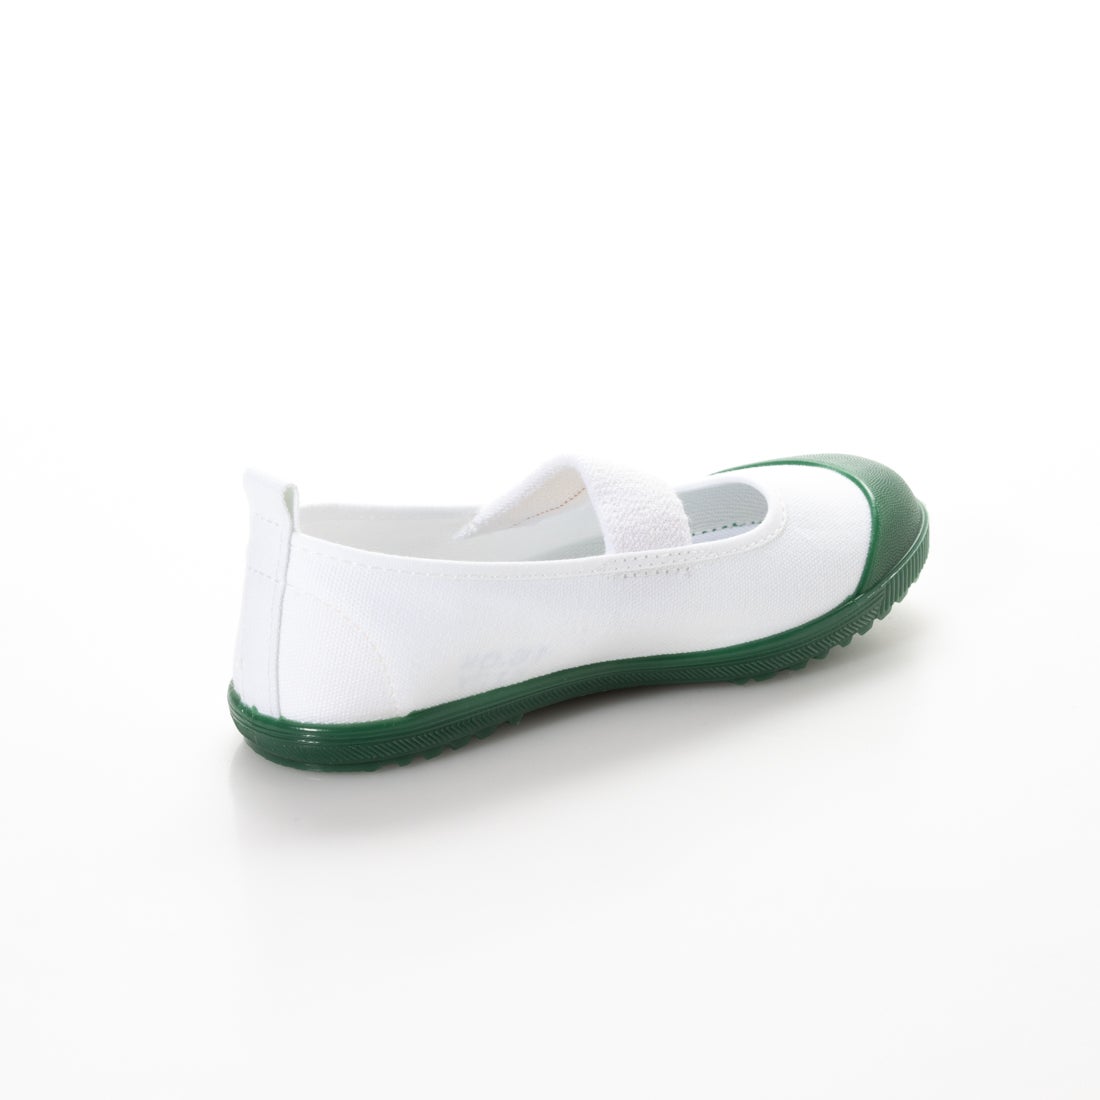 上履き アサヒハイスクールフロアーVK (グリーン) -靴＆ファッション通販 ロコンド〜自宅で試着、気軽に返品